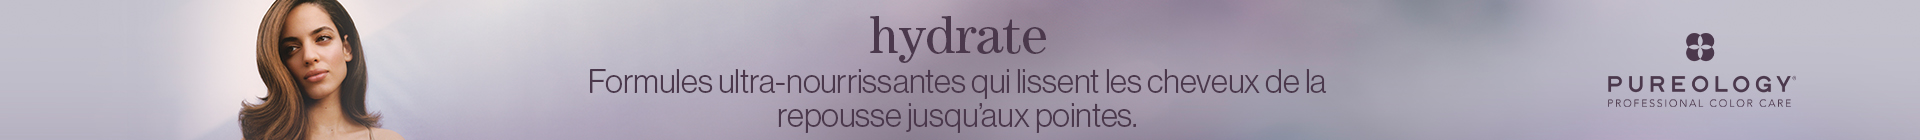 cat-banner-po-hydrate | L'Oréal Partner Shop